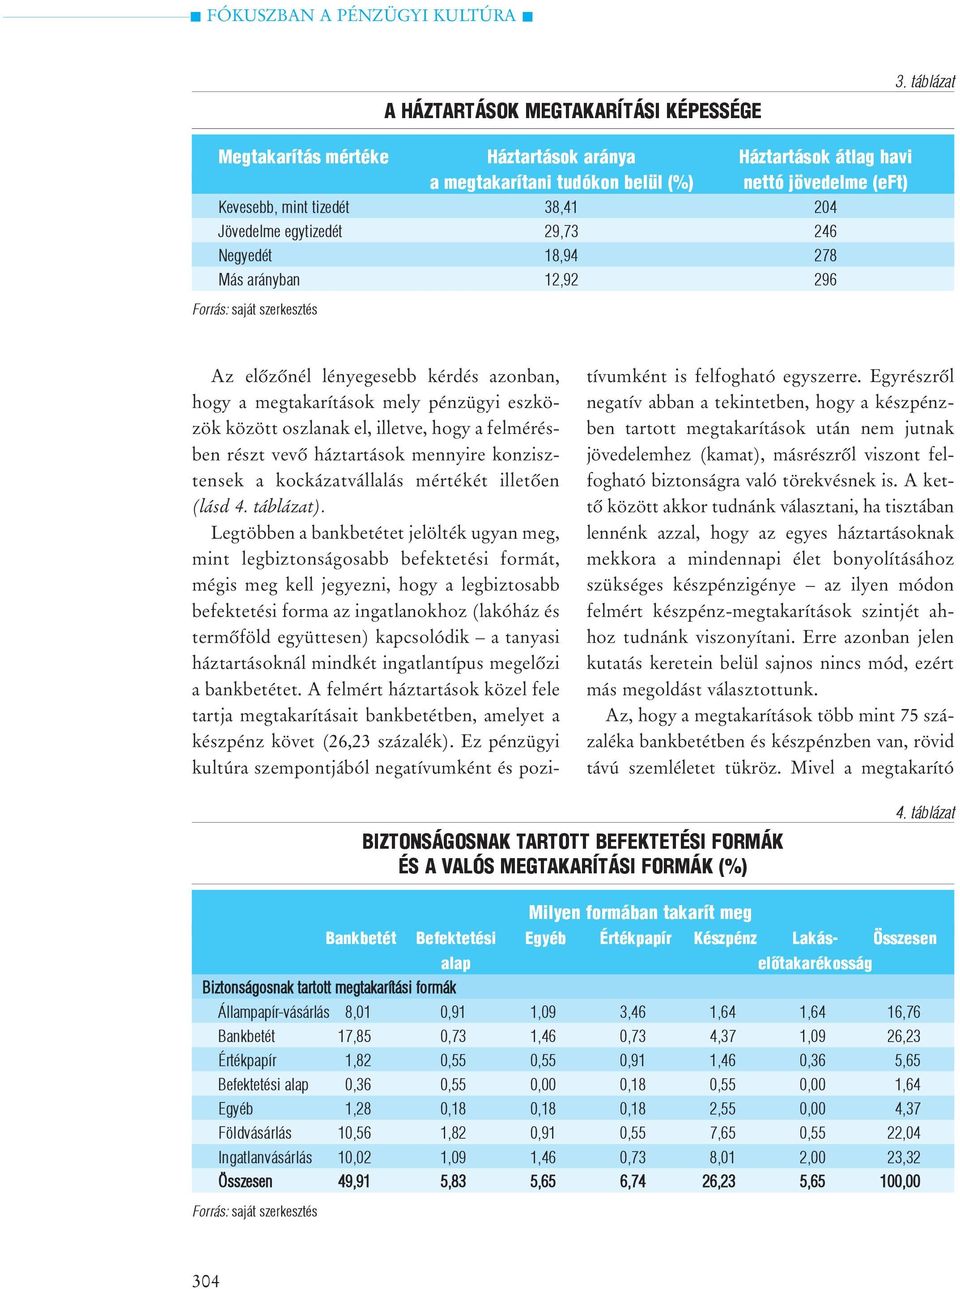 Negyedét 18,94 278 Más arányban 12,92 296 Az elõzõnél lényegesebb kérdés azonban, hogy a megtakarítások mely pénzügyi eszközök között oszlanak el, illetve, hogy a felmérésben részt vevõ háztartások